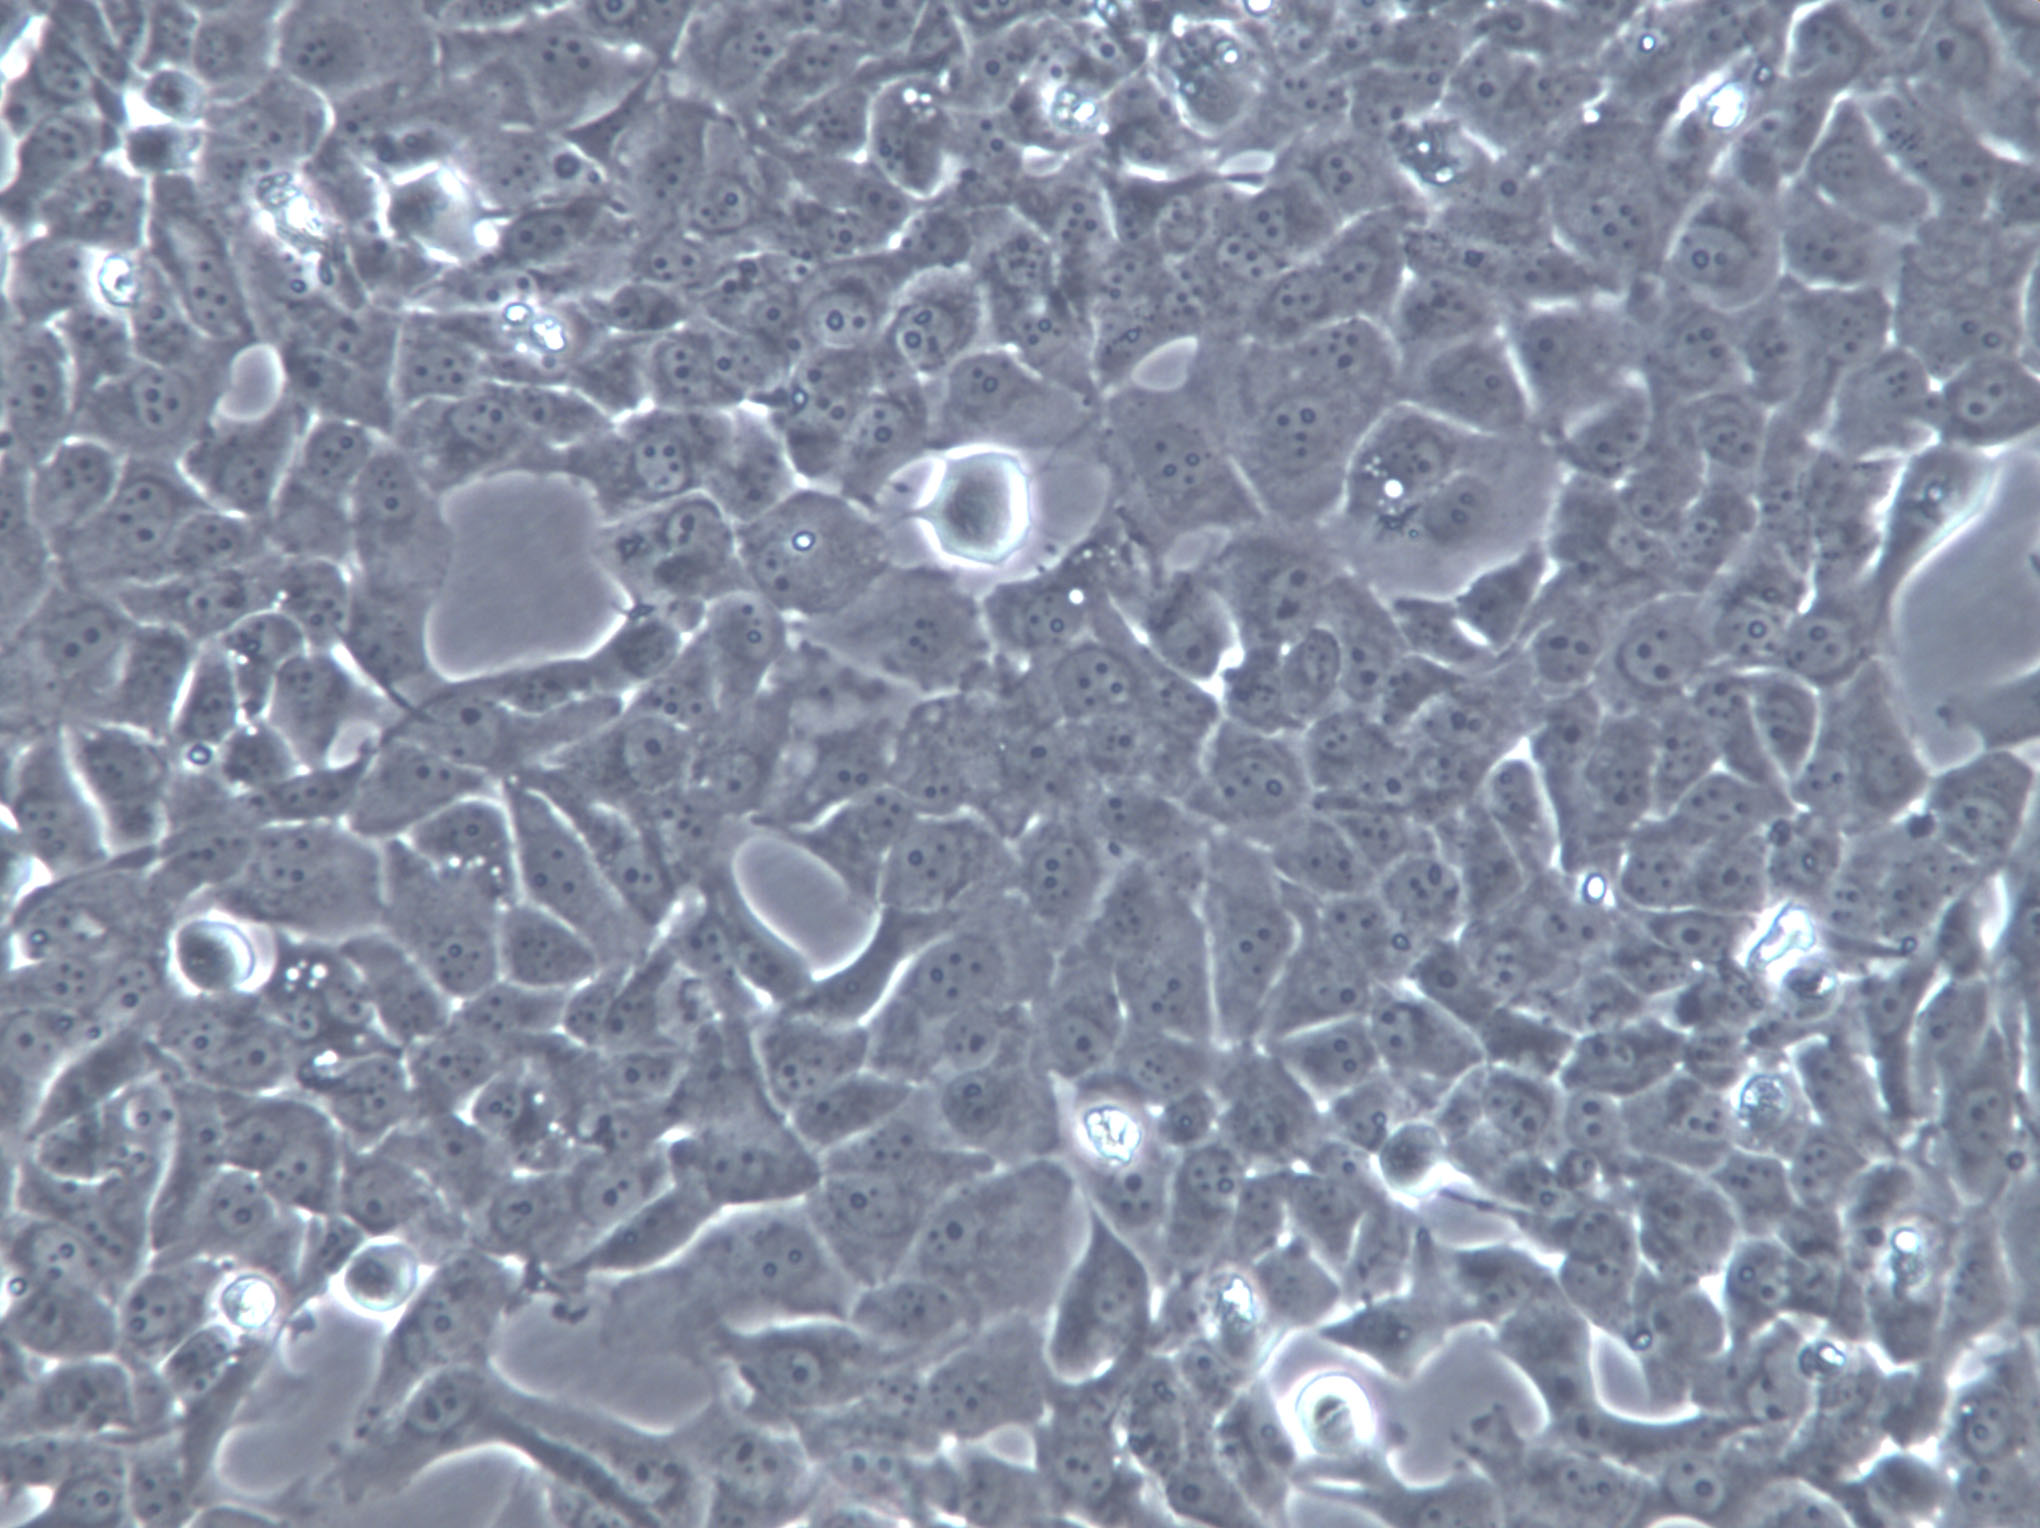 IOSE-29 Cells|人卵巢上皮克隆细胞,IOSE-29 Cells